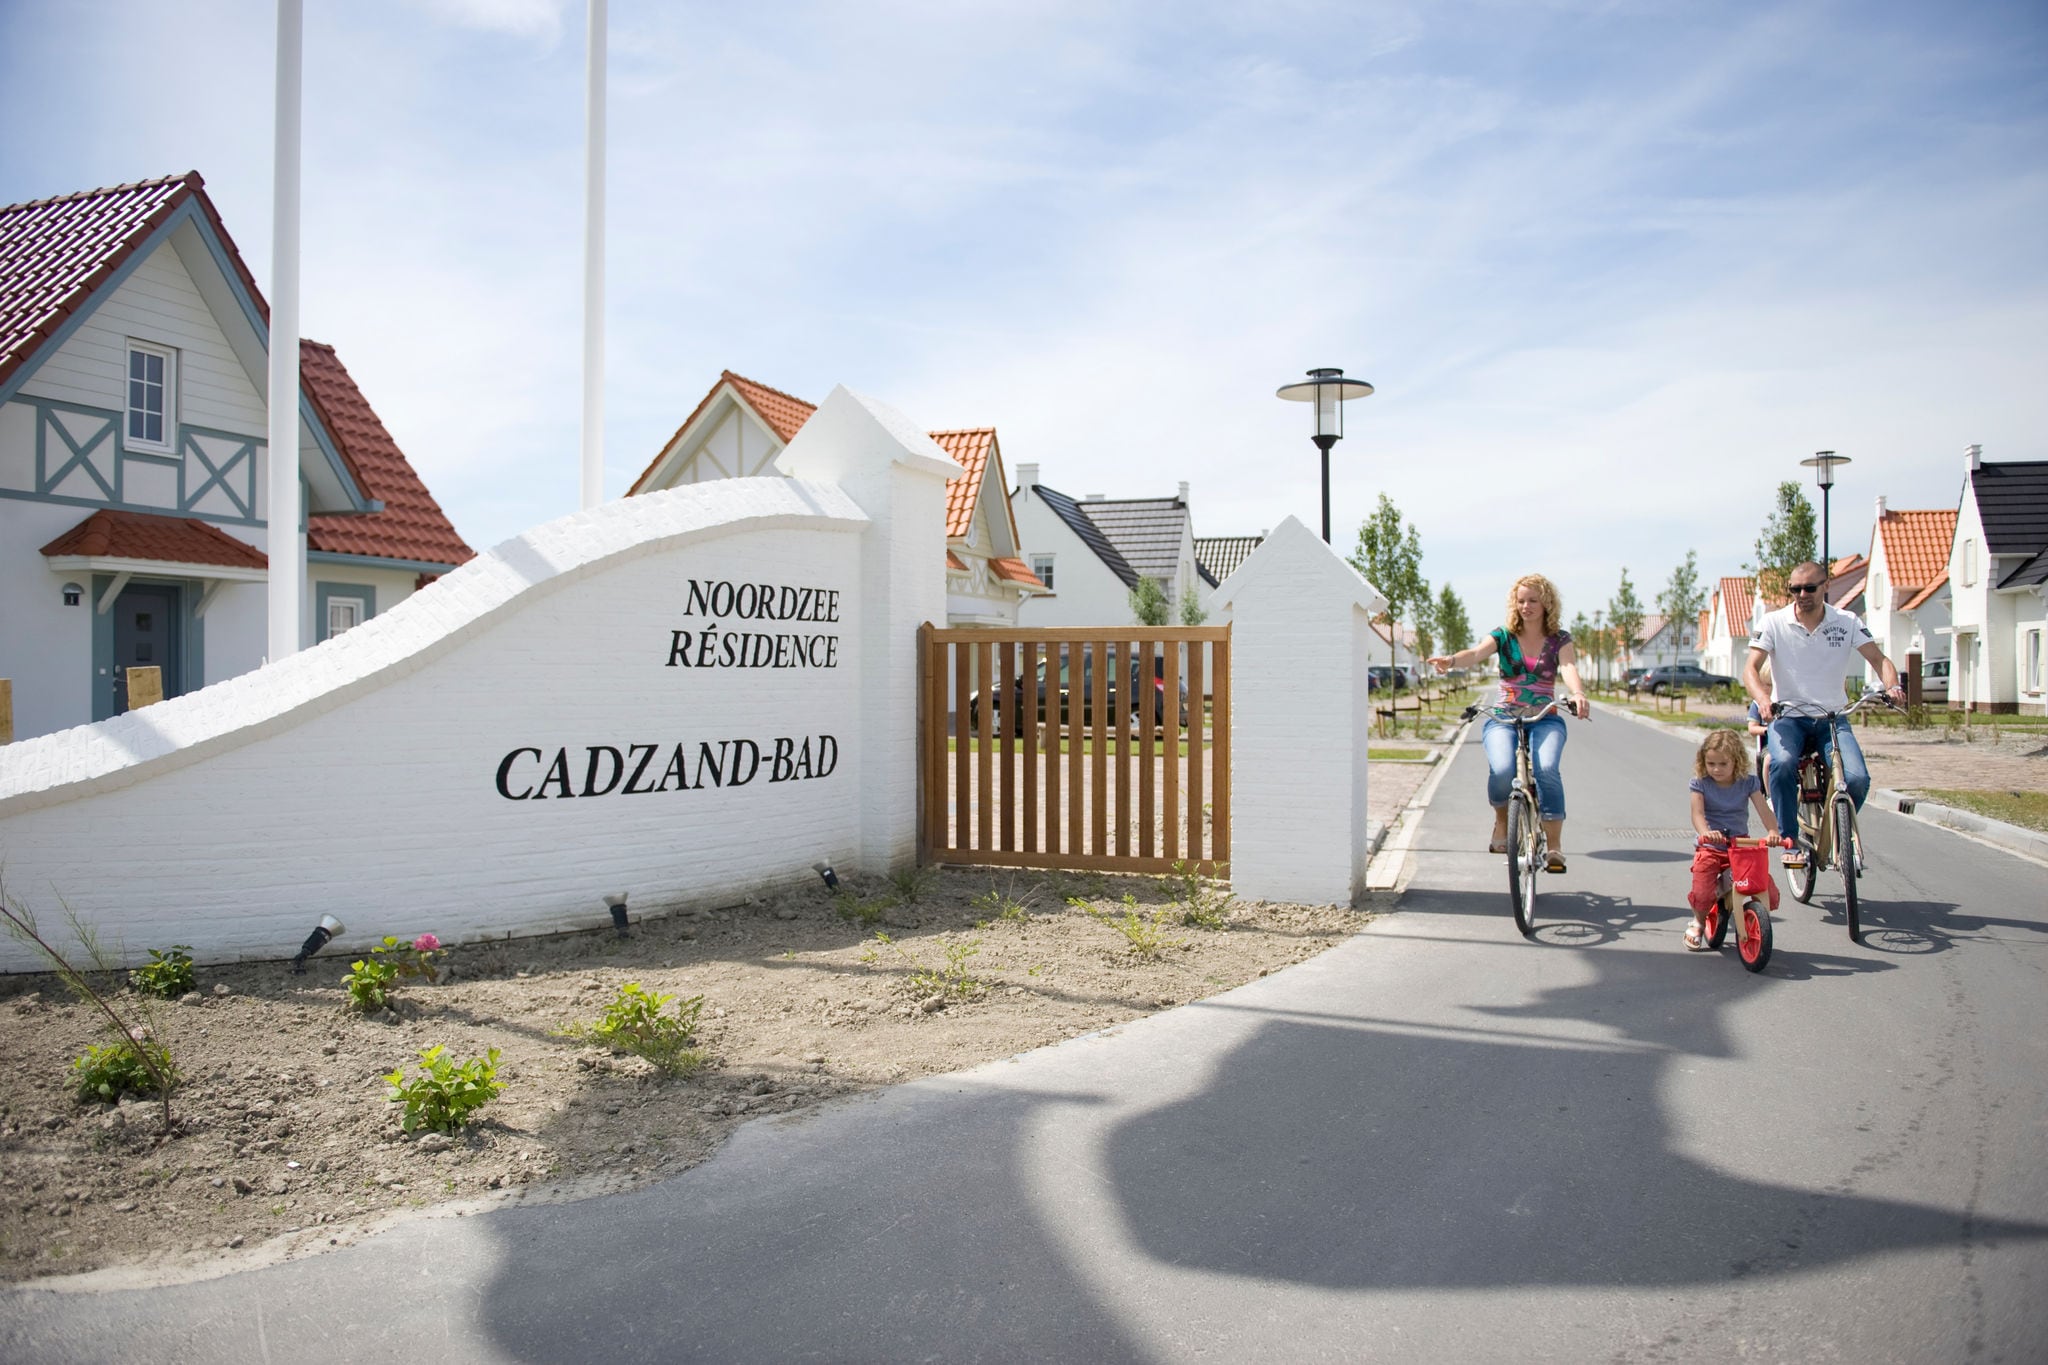 Noordzee Residence Cadzand-Bad in Cadzand-Bad - Zeeland, Nederland foto 11015